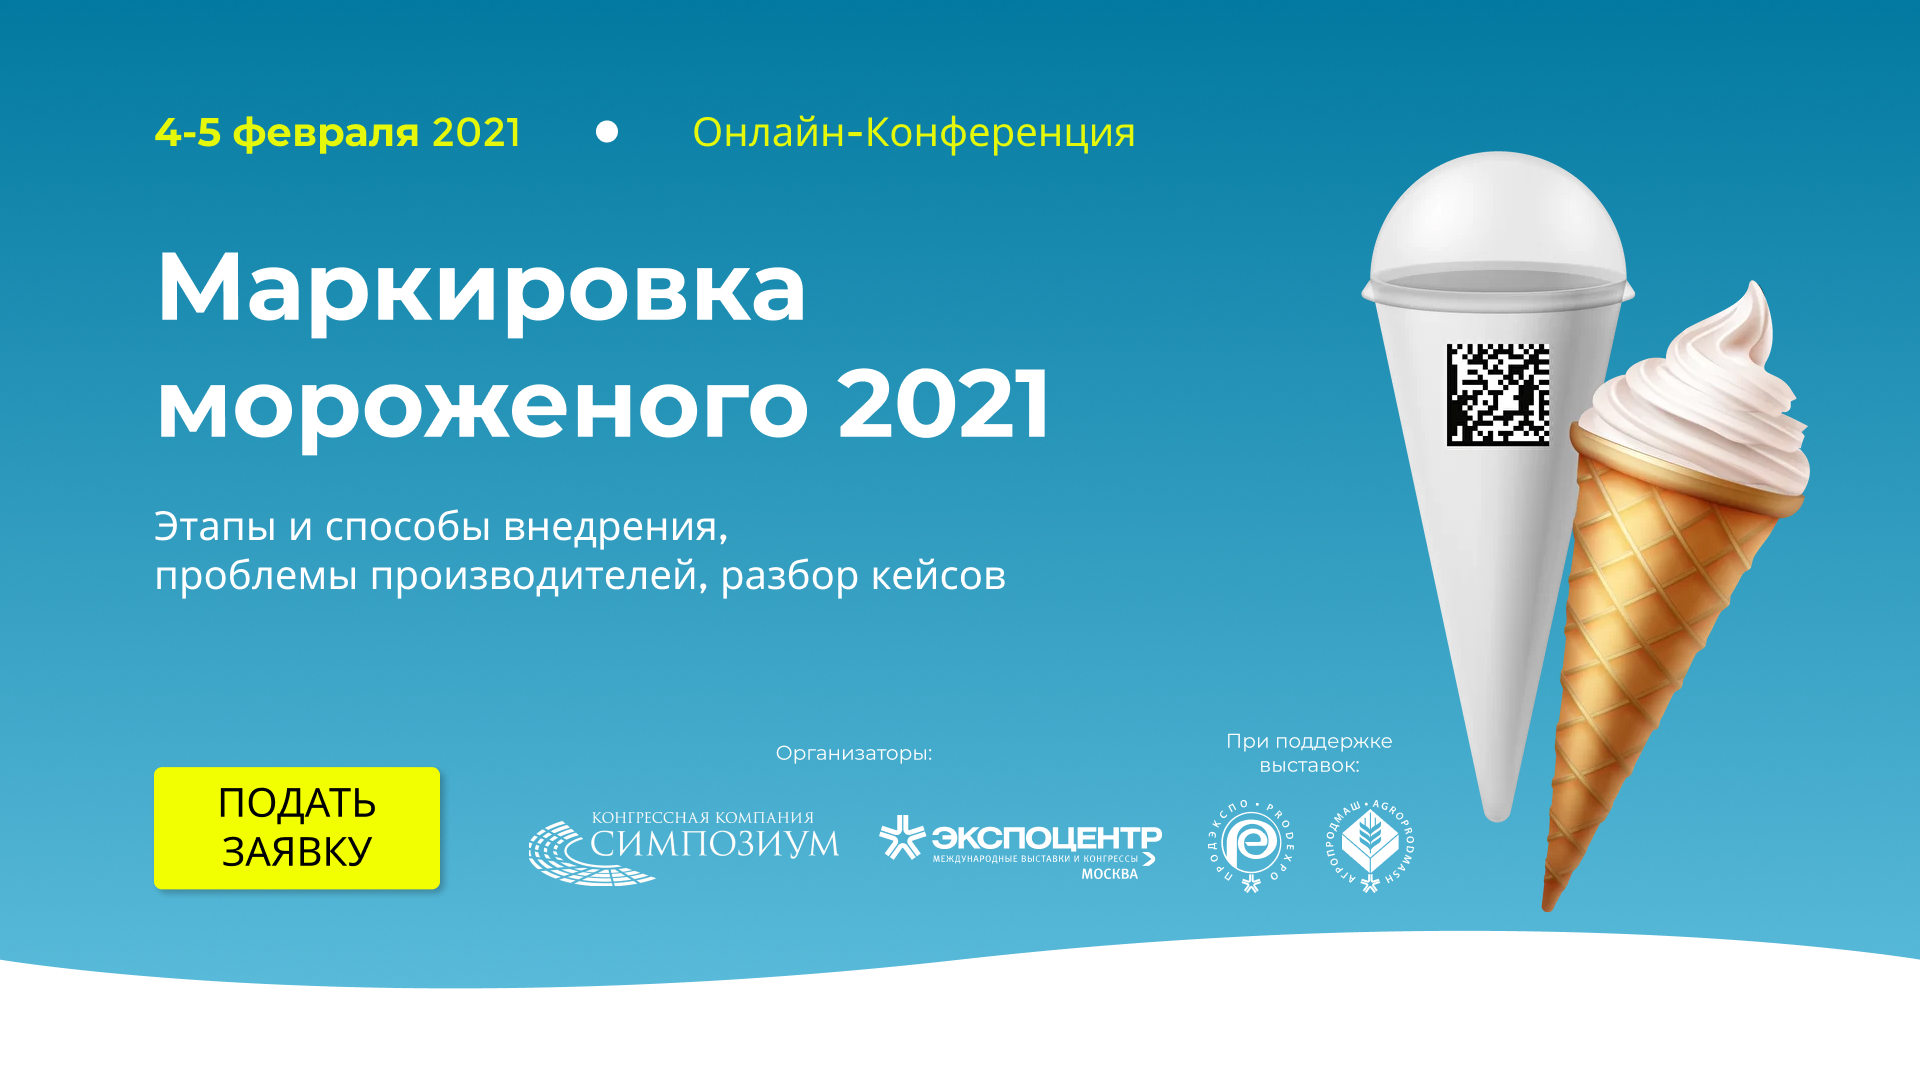 Онлайн-Конференция «Маркировка мороженого 2021»